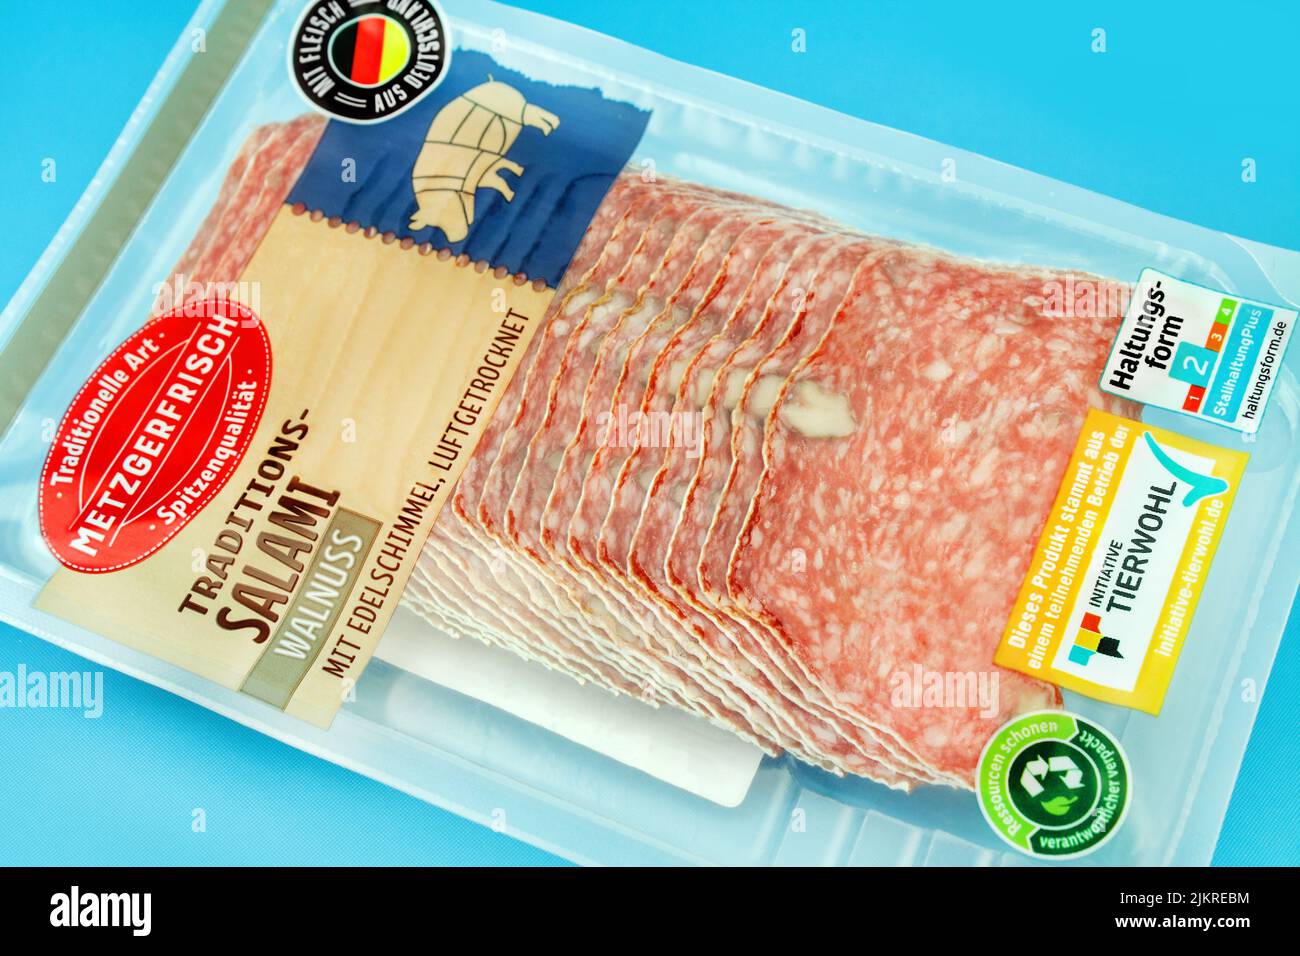 Walnuss Salami aus Deutschland von Metzgerfrisch mit Tierwohl Label Foto de stock